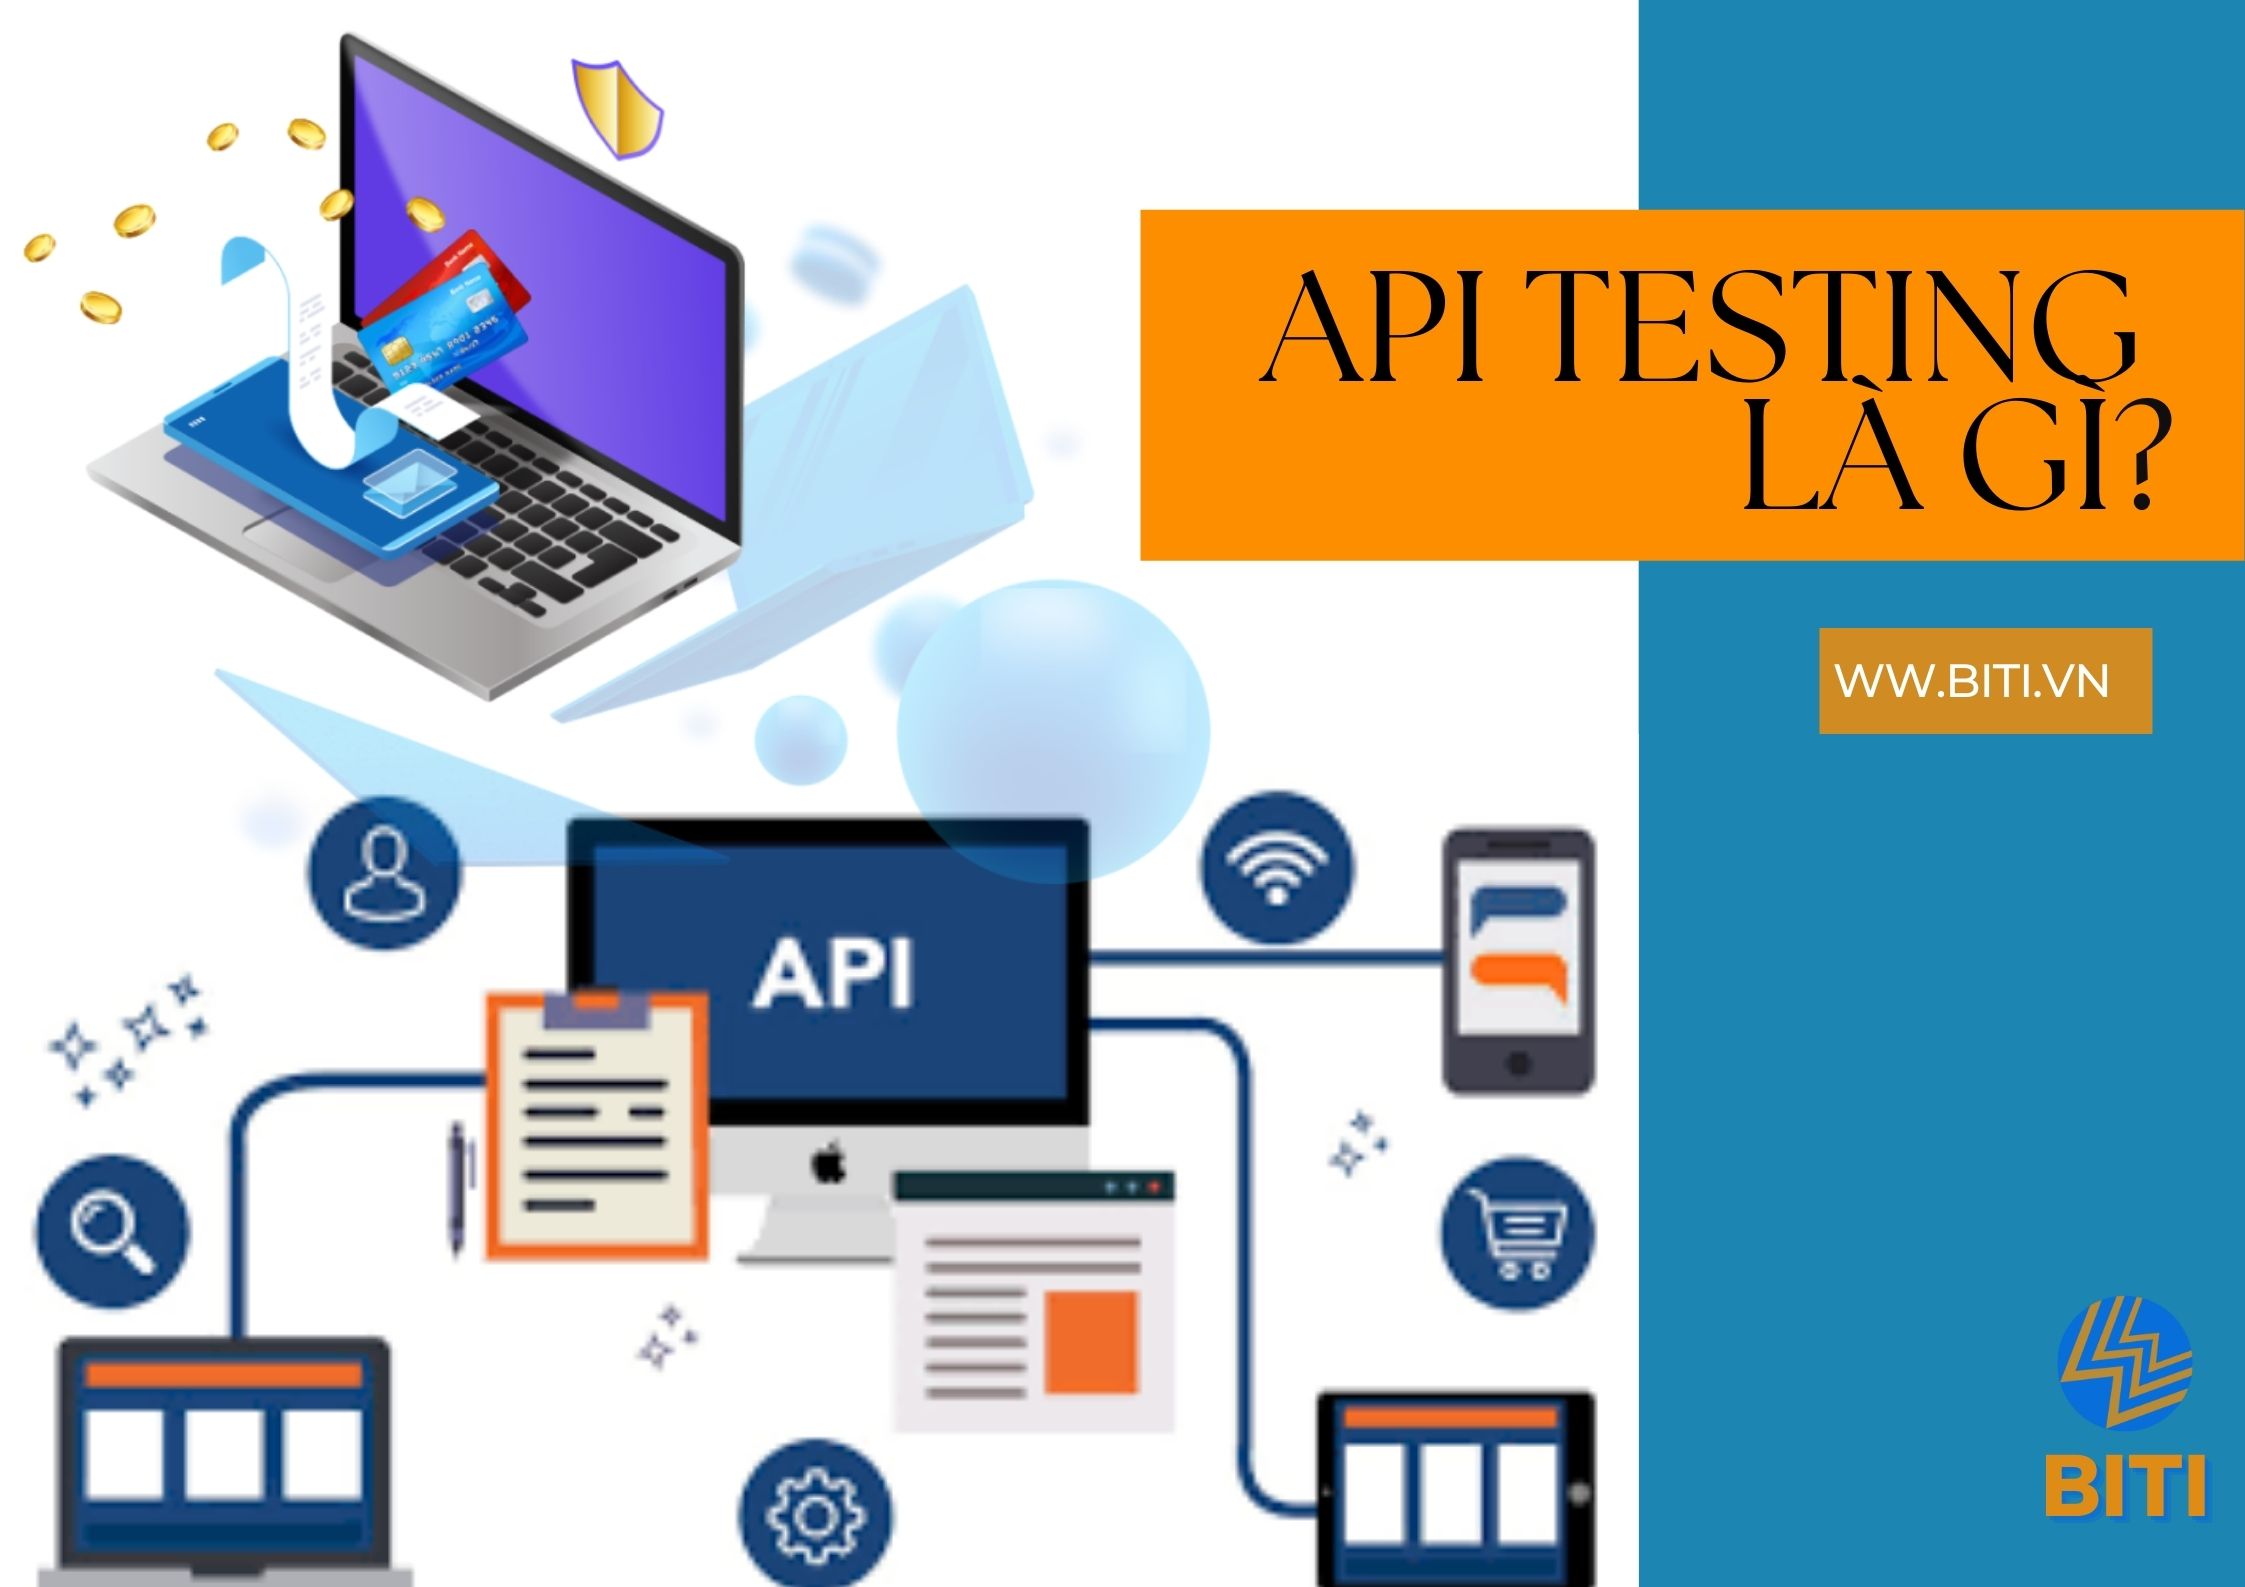 API Testing là gì? Những điều cần biết về Test API